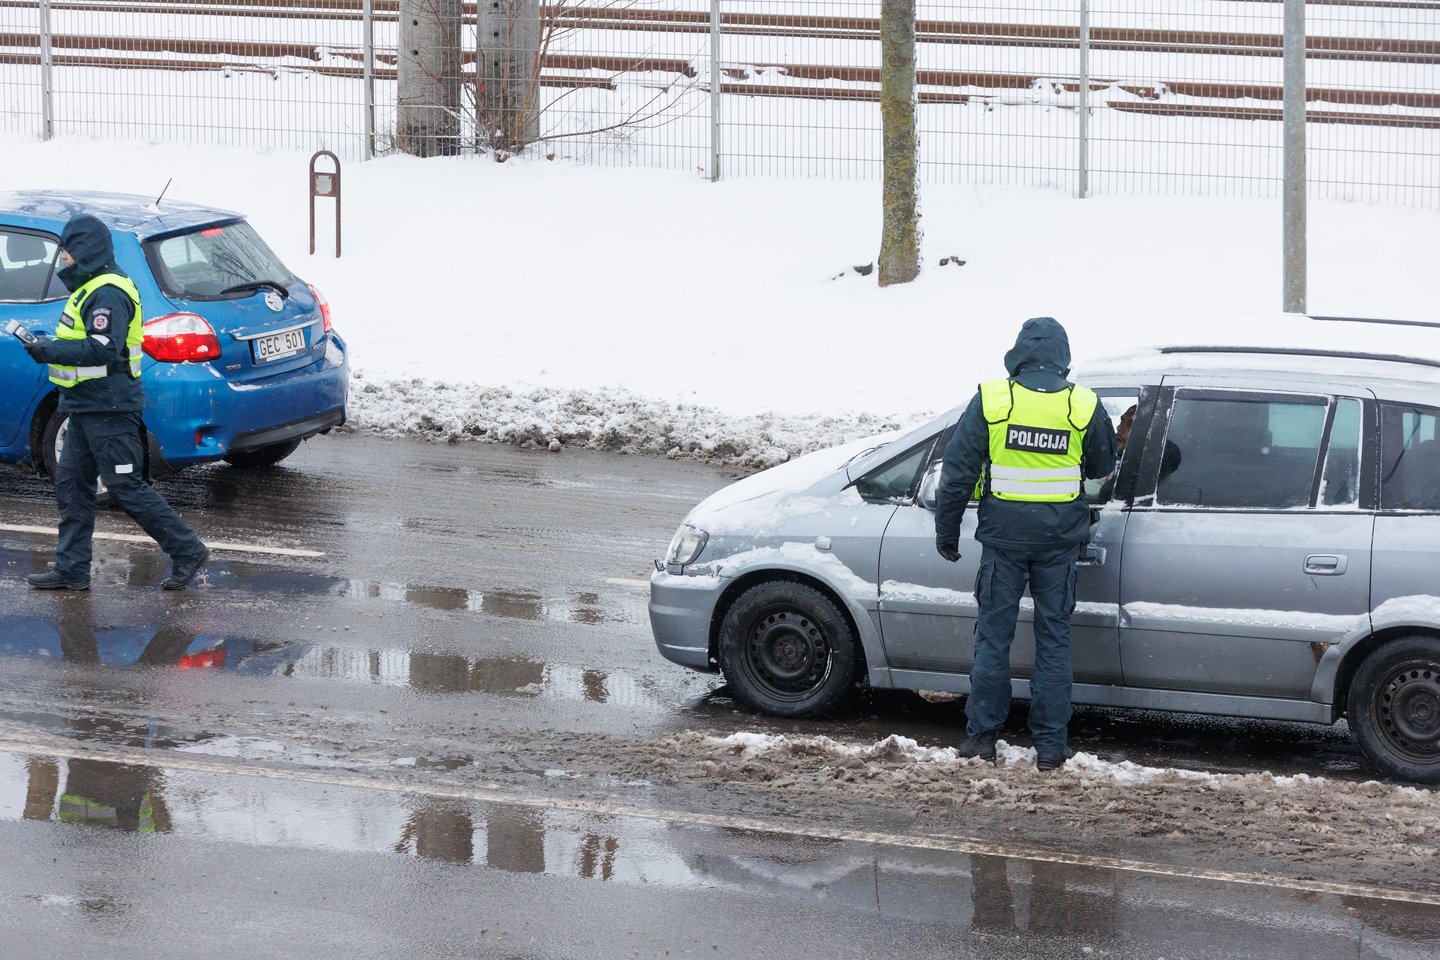  Antrą Kalėdų rytą sostinės Drujos gatvėje vykusio policijos reido metu įkliuvo neblaivus "Subaru Forester" vairuotojas, tačiau girtų kelių erelių netrūko ir prieš šį reidą. <br> T.Bauro nuotr.